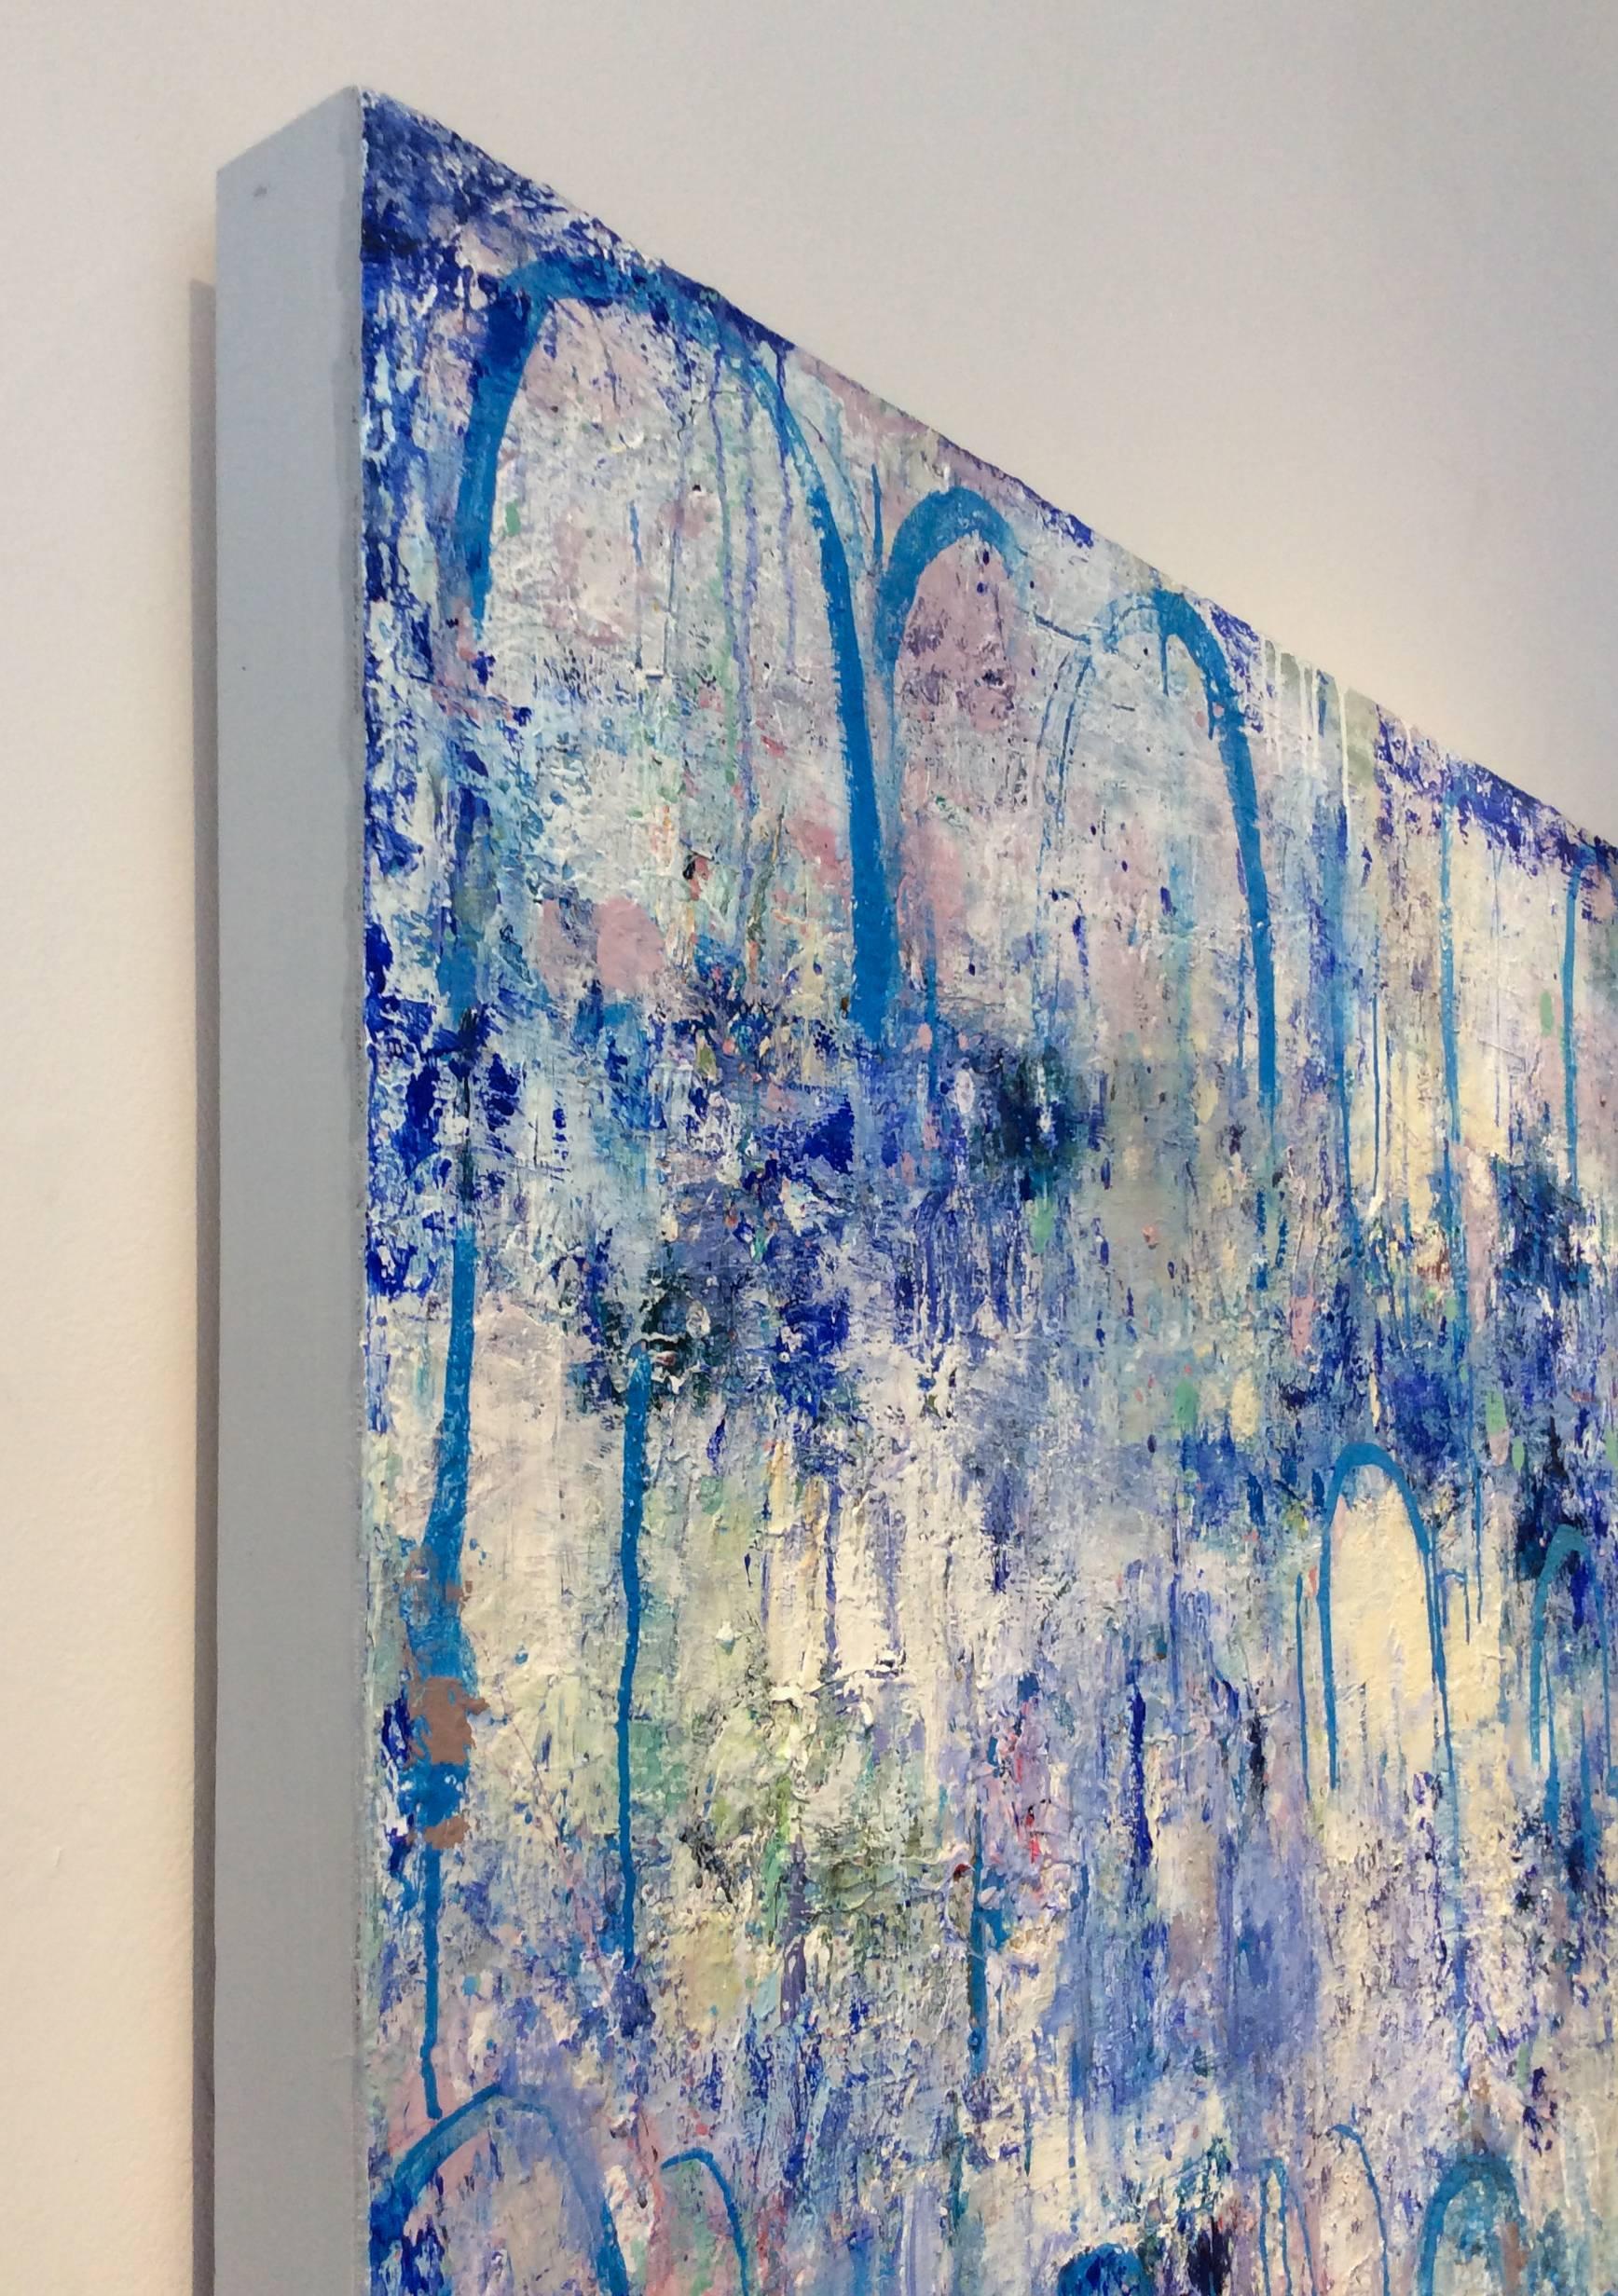 60 x 48 Zoll
mischtechnik und Gips auf Holzplatte

Dieses zeitgenössische, große vertikale Gemälde im Stil des abstrakten Expressionismus und Symbolismus wurde 2016 von der Künstlerin Ragellah Rourke aus dem Hudson Valley geschaffen. Im Mittelpunkt